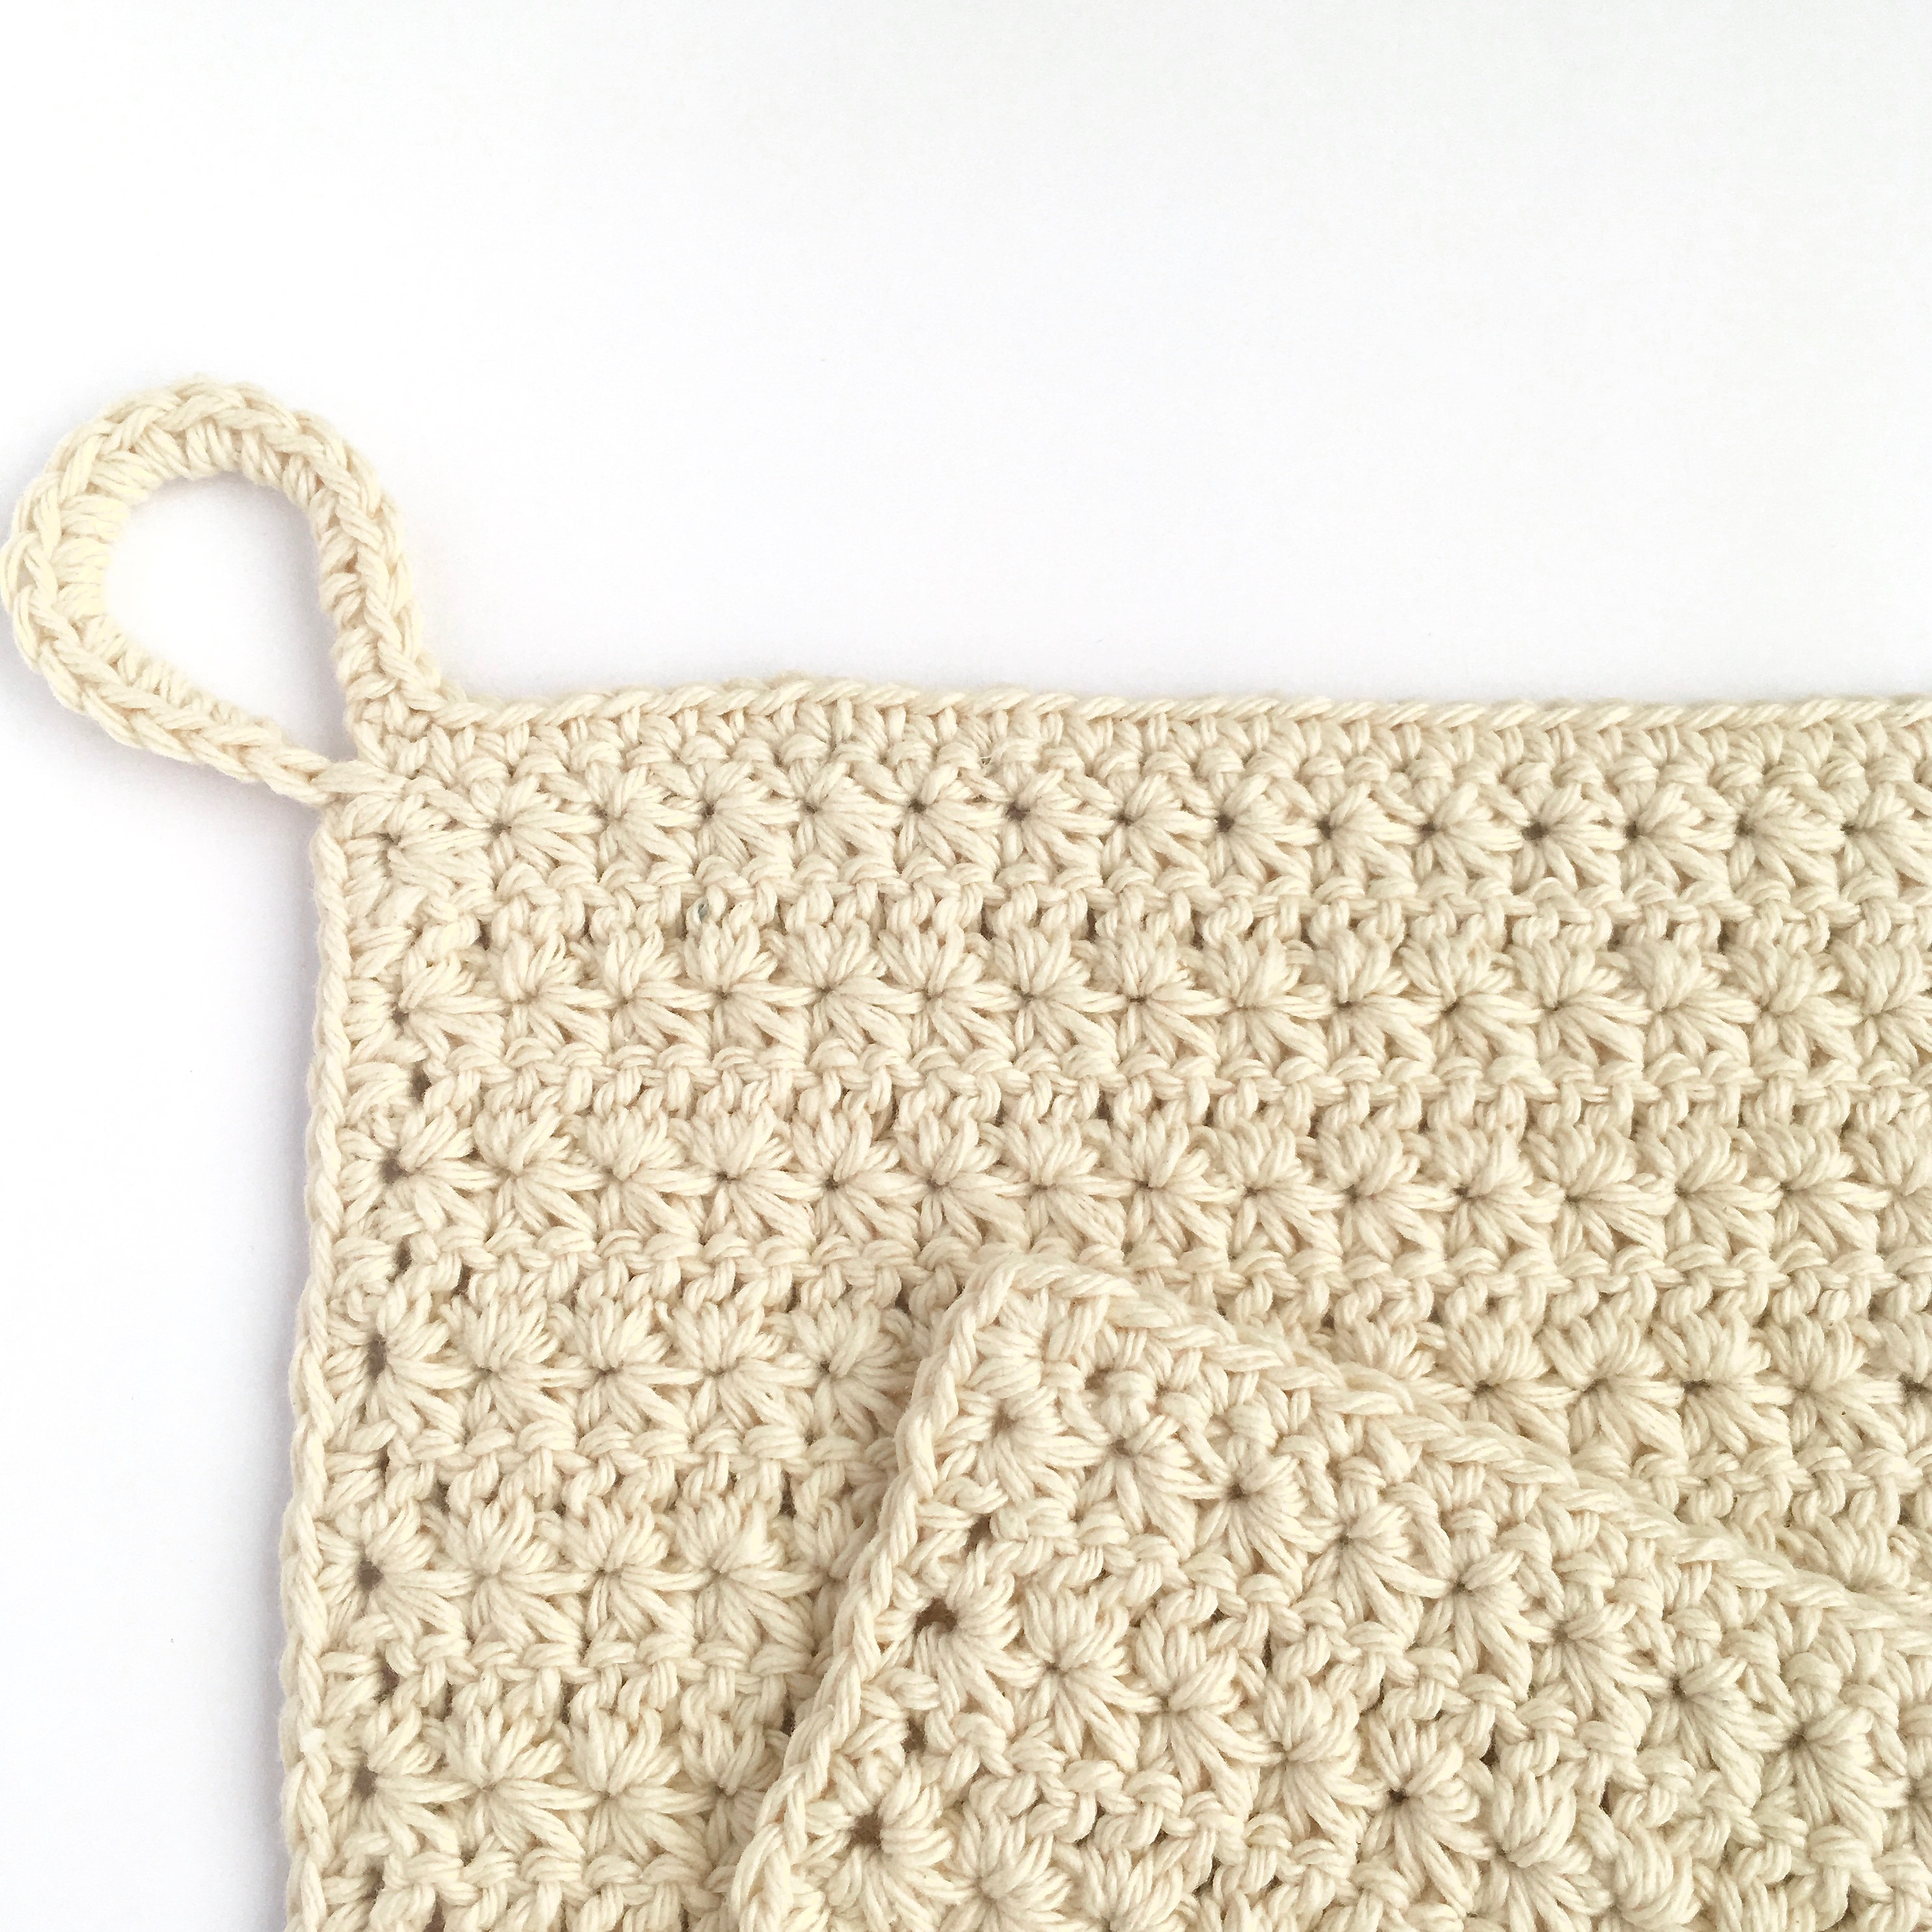 Crochet Dishcloth Kit / DIY Crochet Kit Make Your Own Dishcloth / Simple Crochet  Beginner Kit / Eco-friendly Recycled Gift for Crocheter 